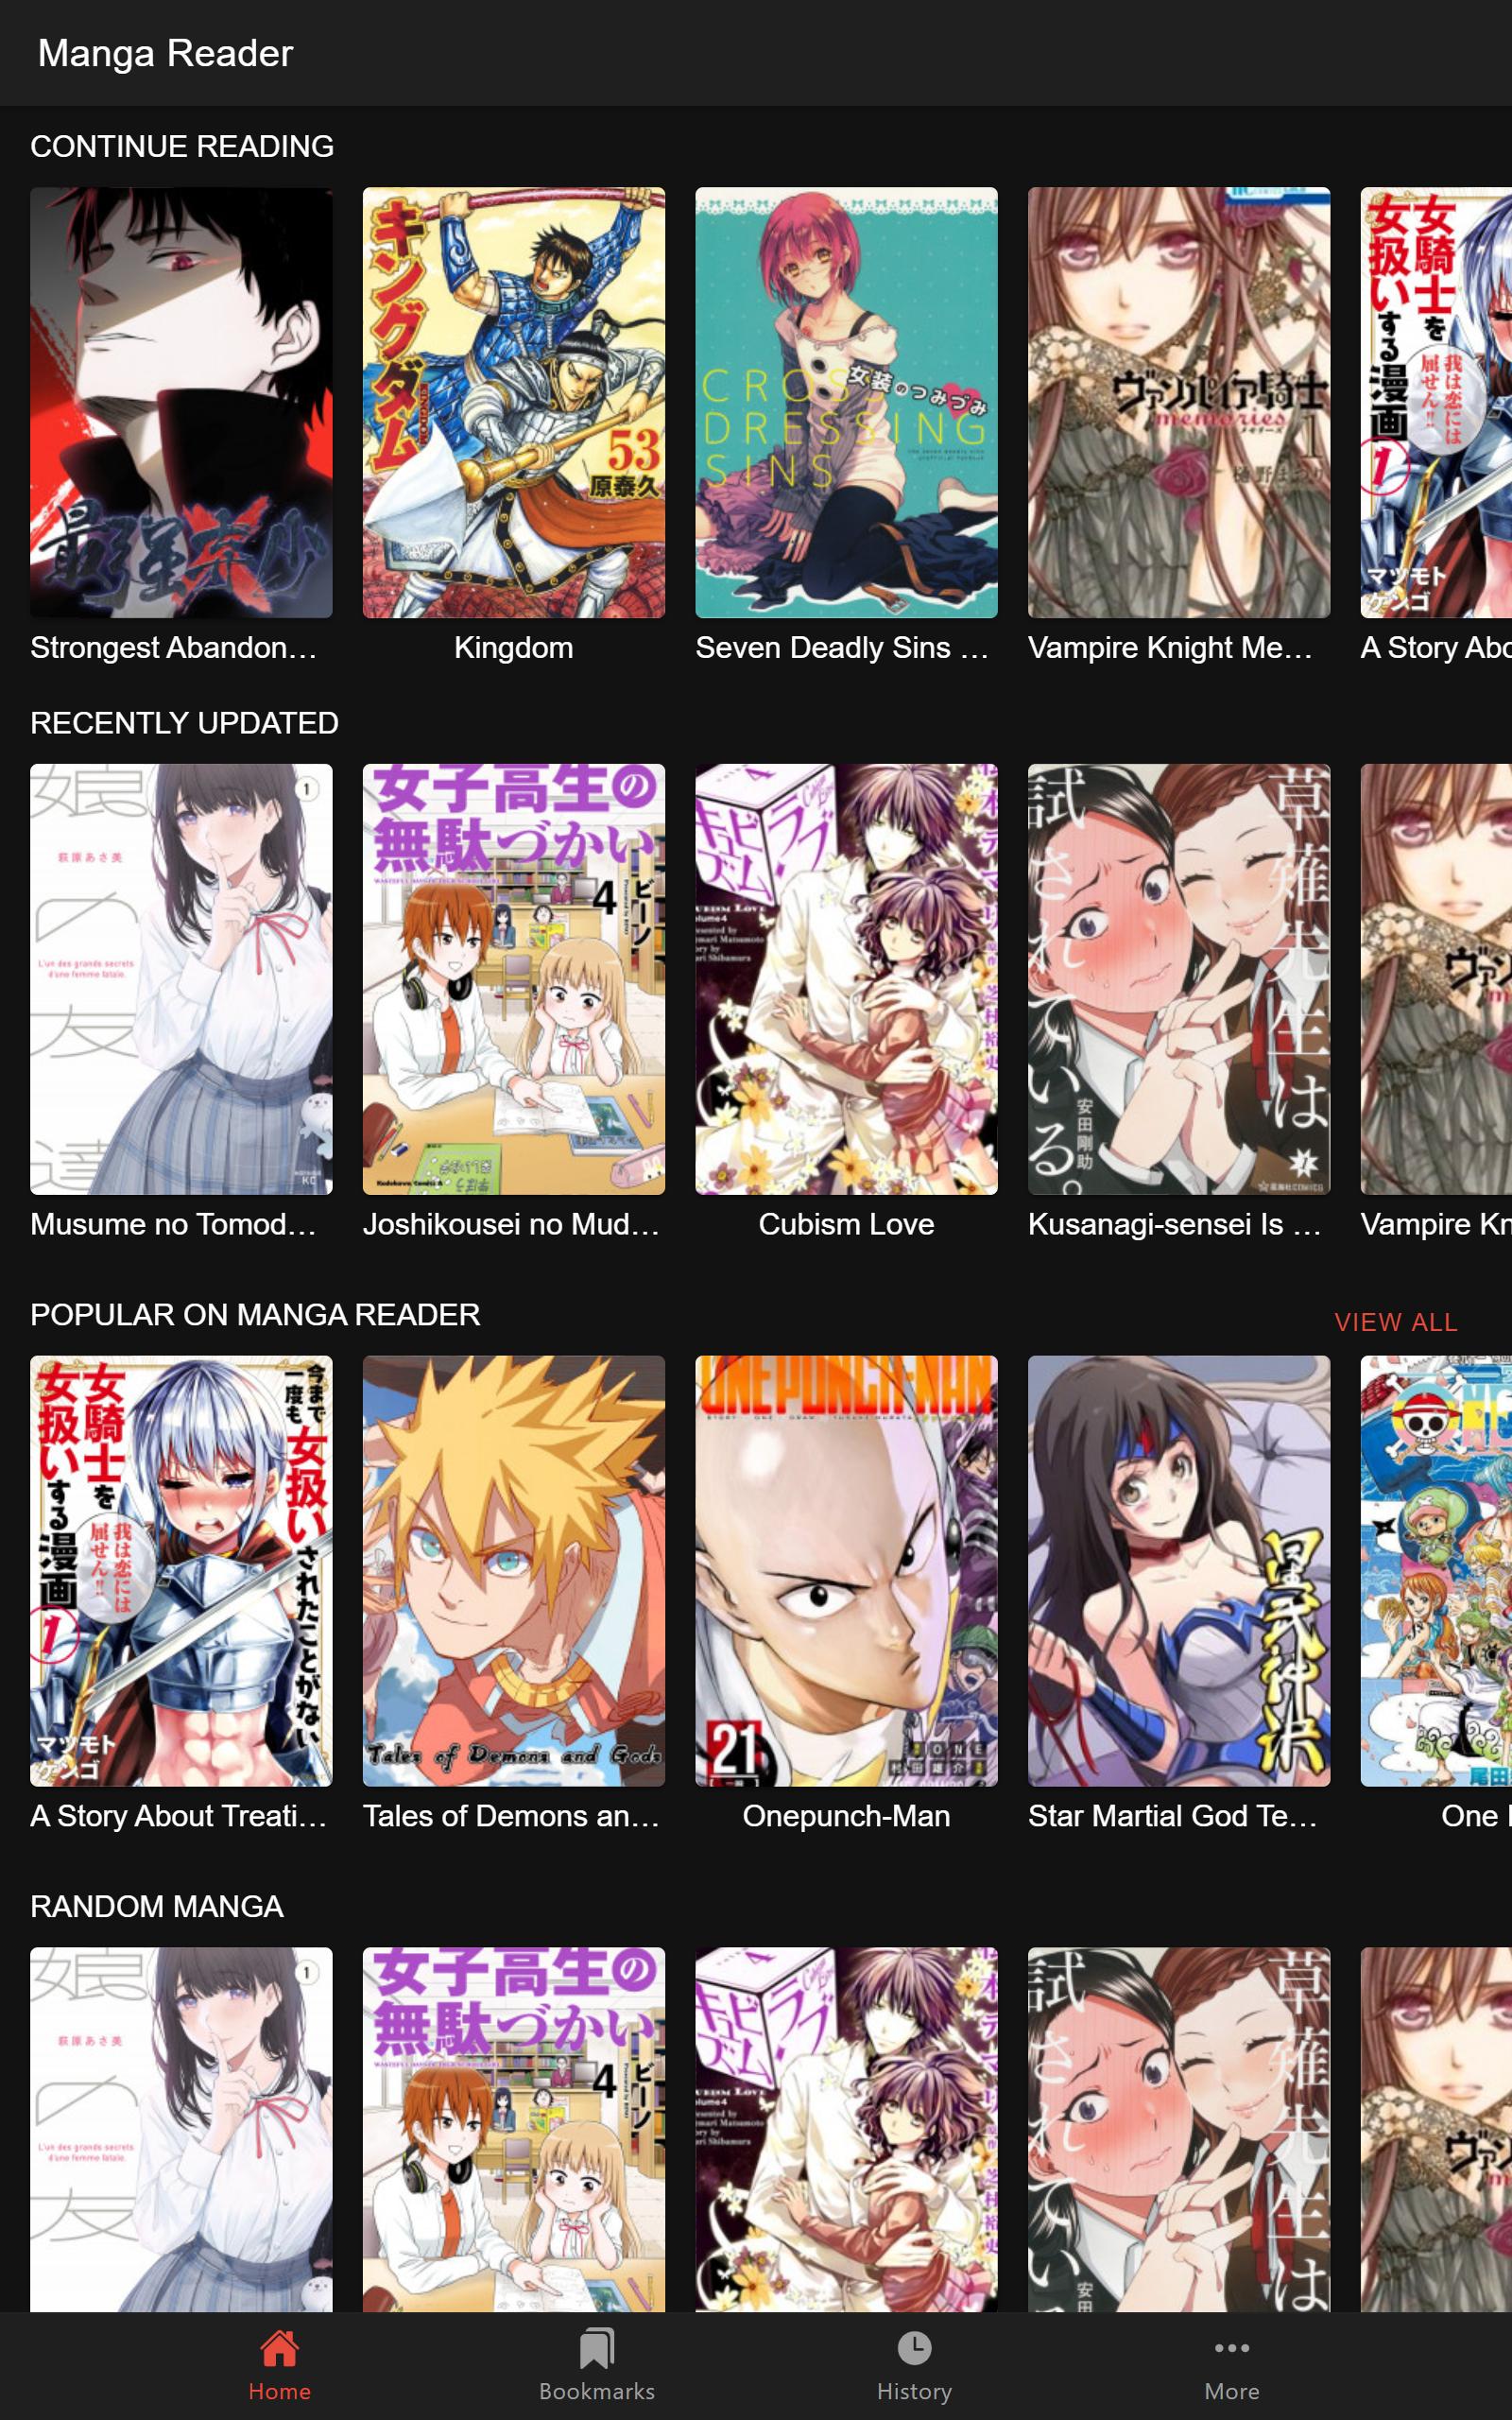 Manga Reader Read manga online free mangareader 0.0.12 Screenshot 6